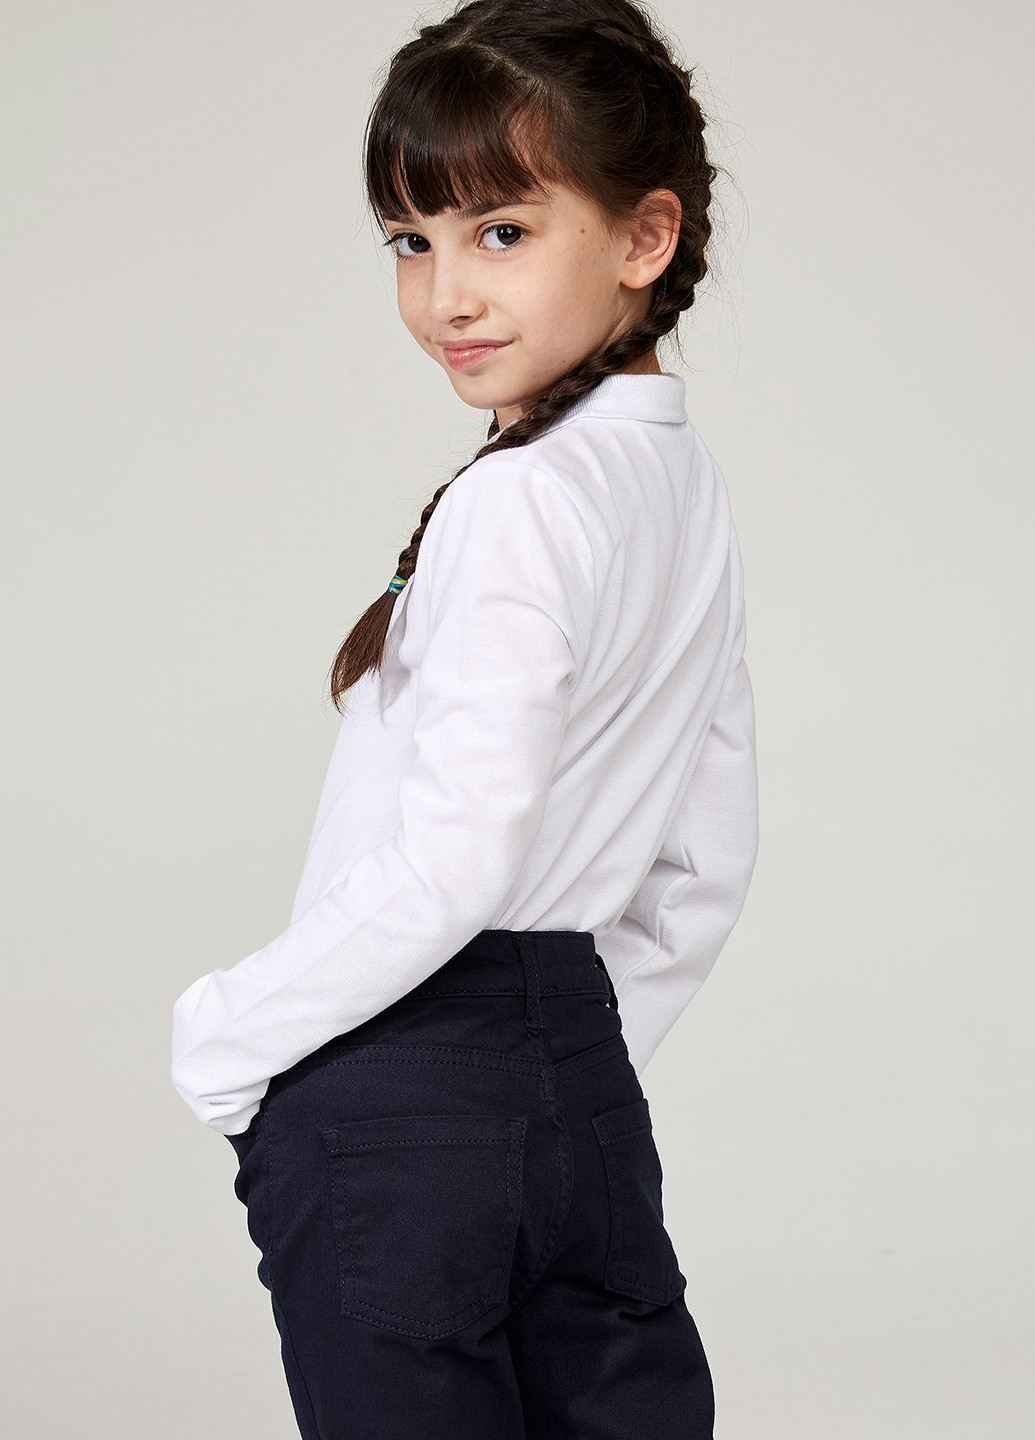 Белая детская футболка-комплект(полло с длинным и коротким рукавом) для девочки DeFacto